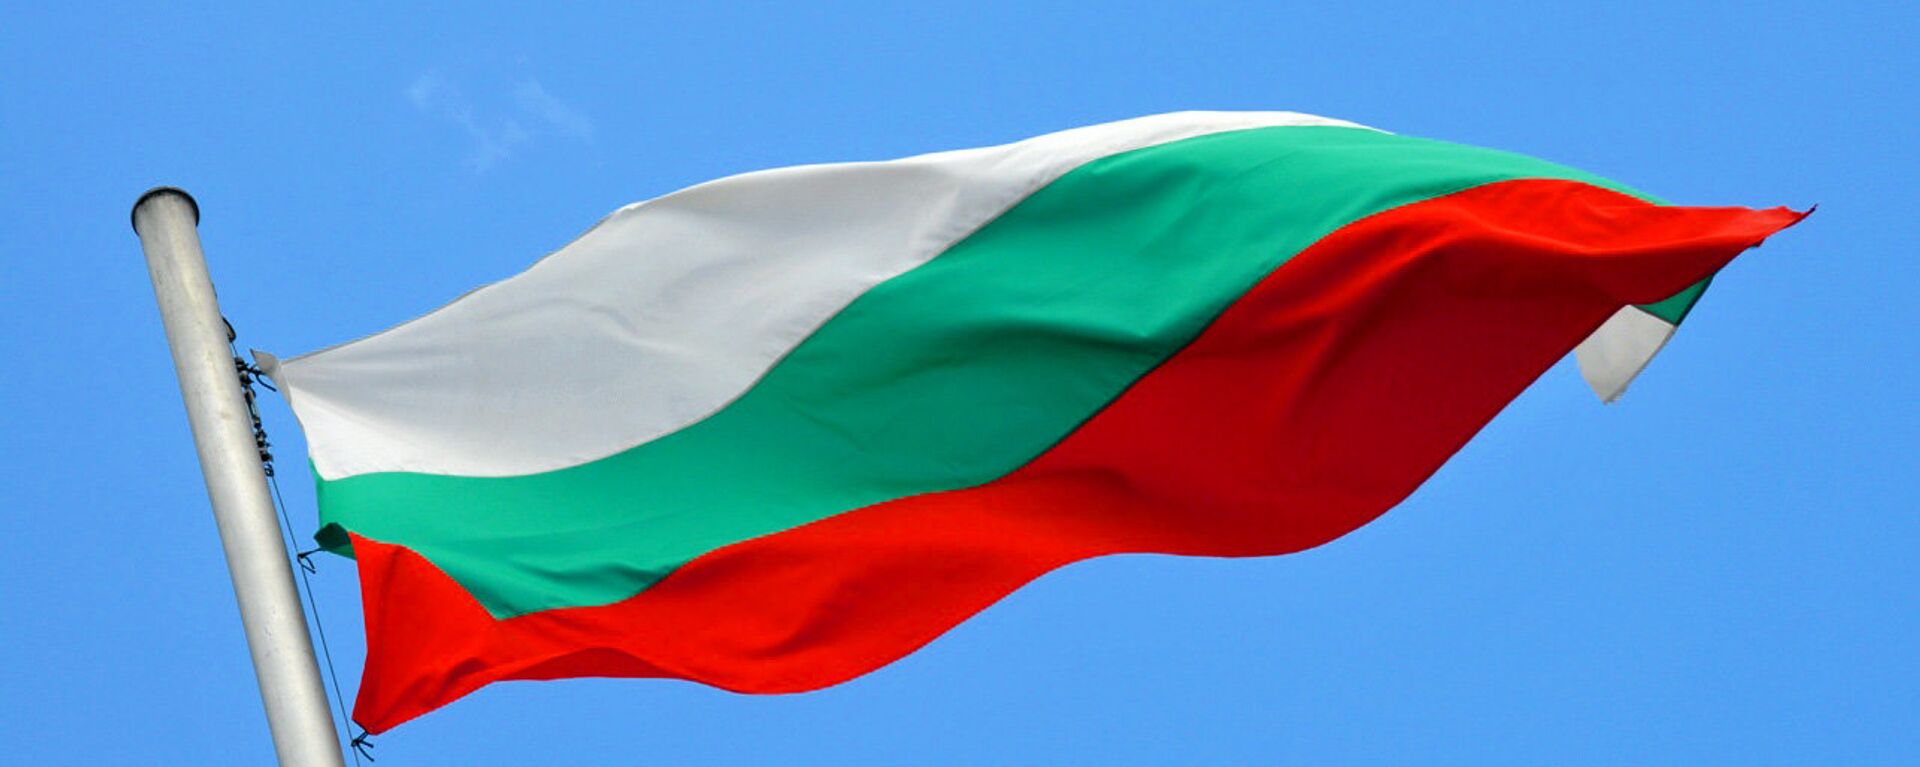 La bandera de Bulgaria - Sputnik Mundo, 1920, 22.03.2021